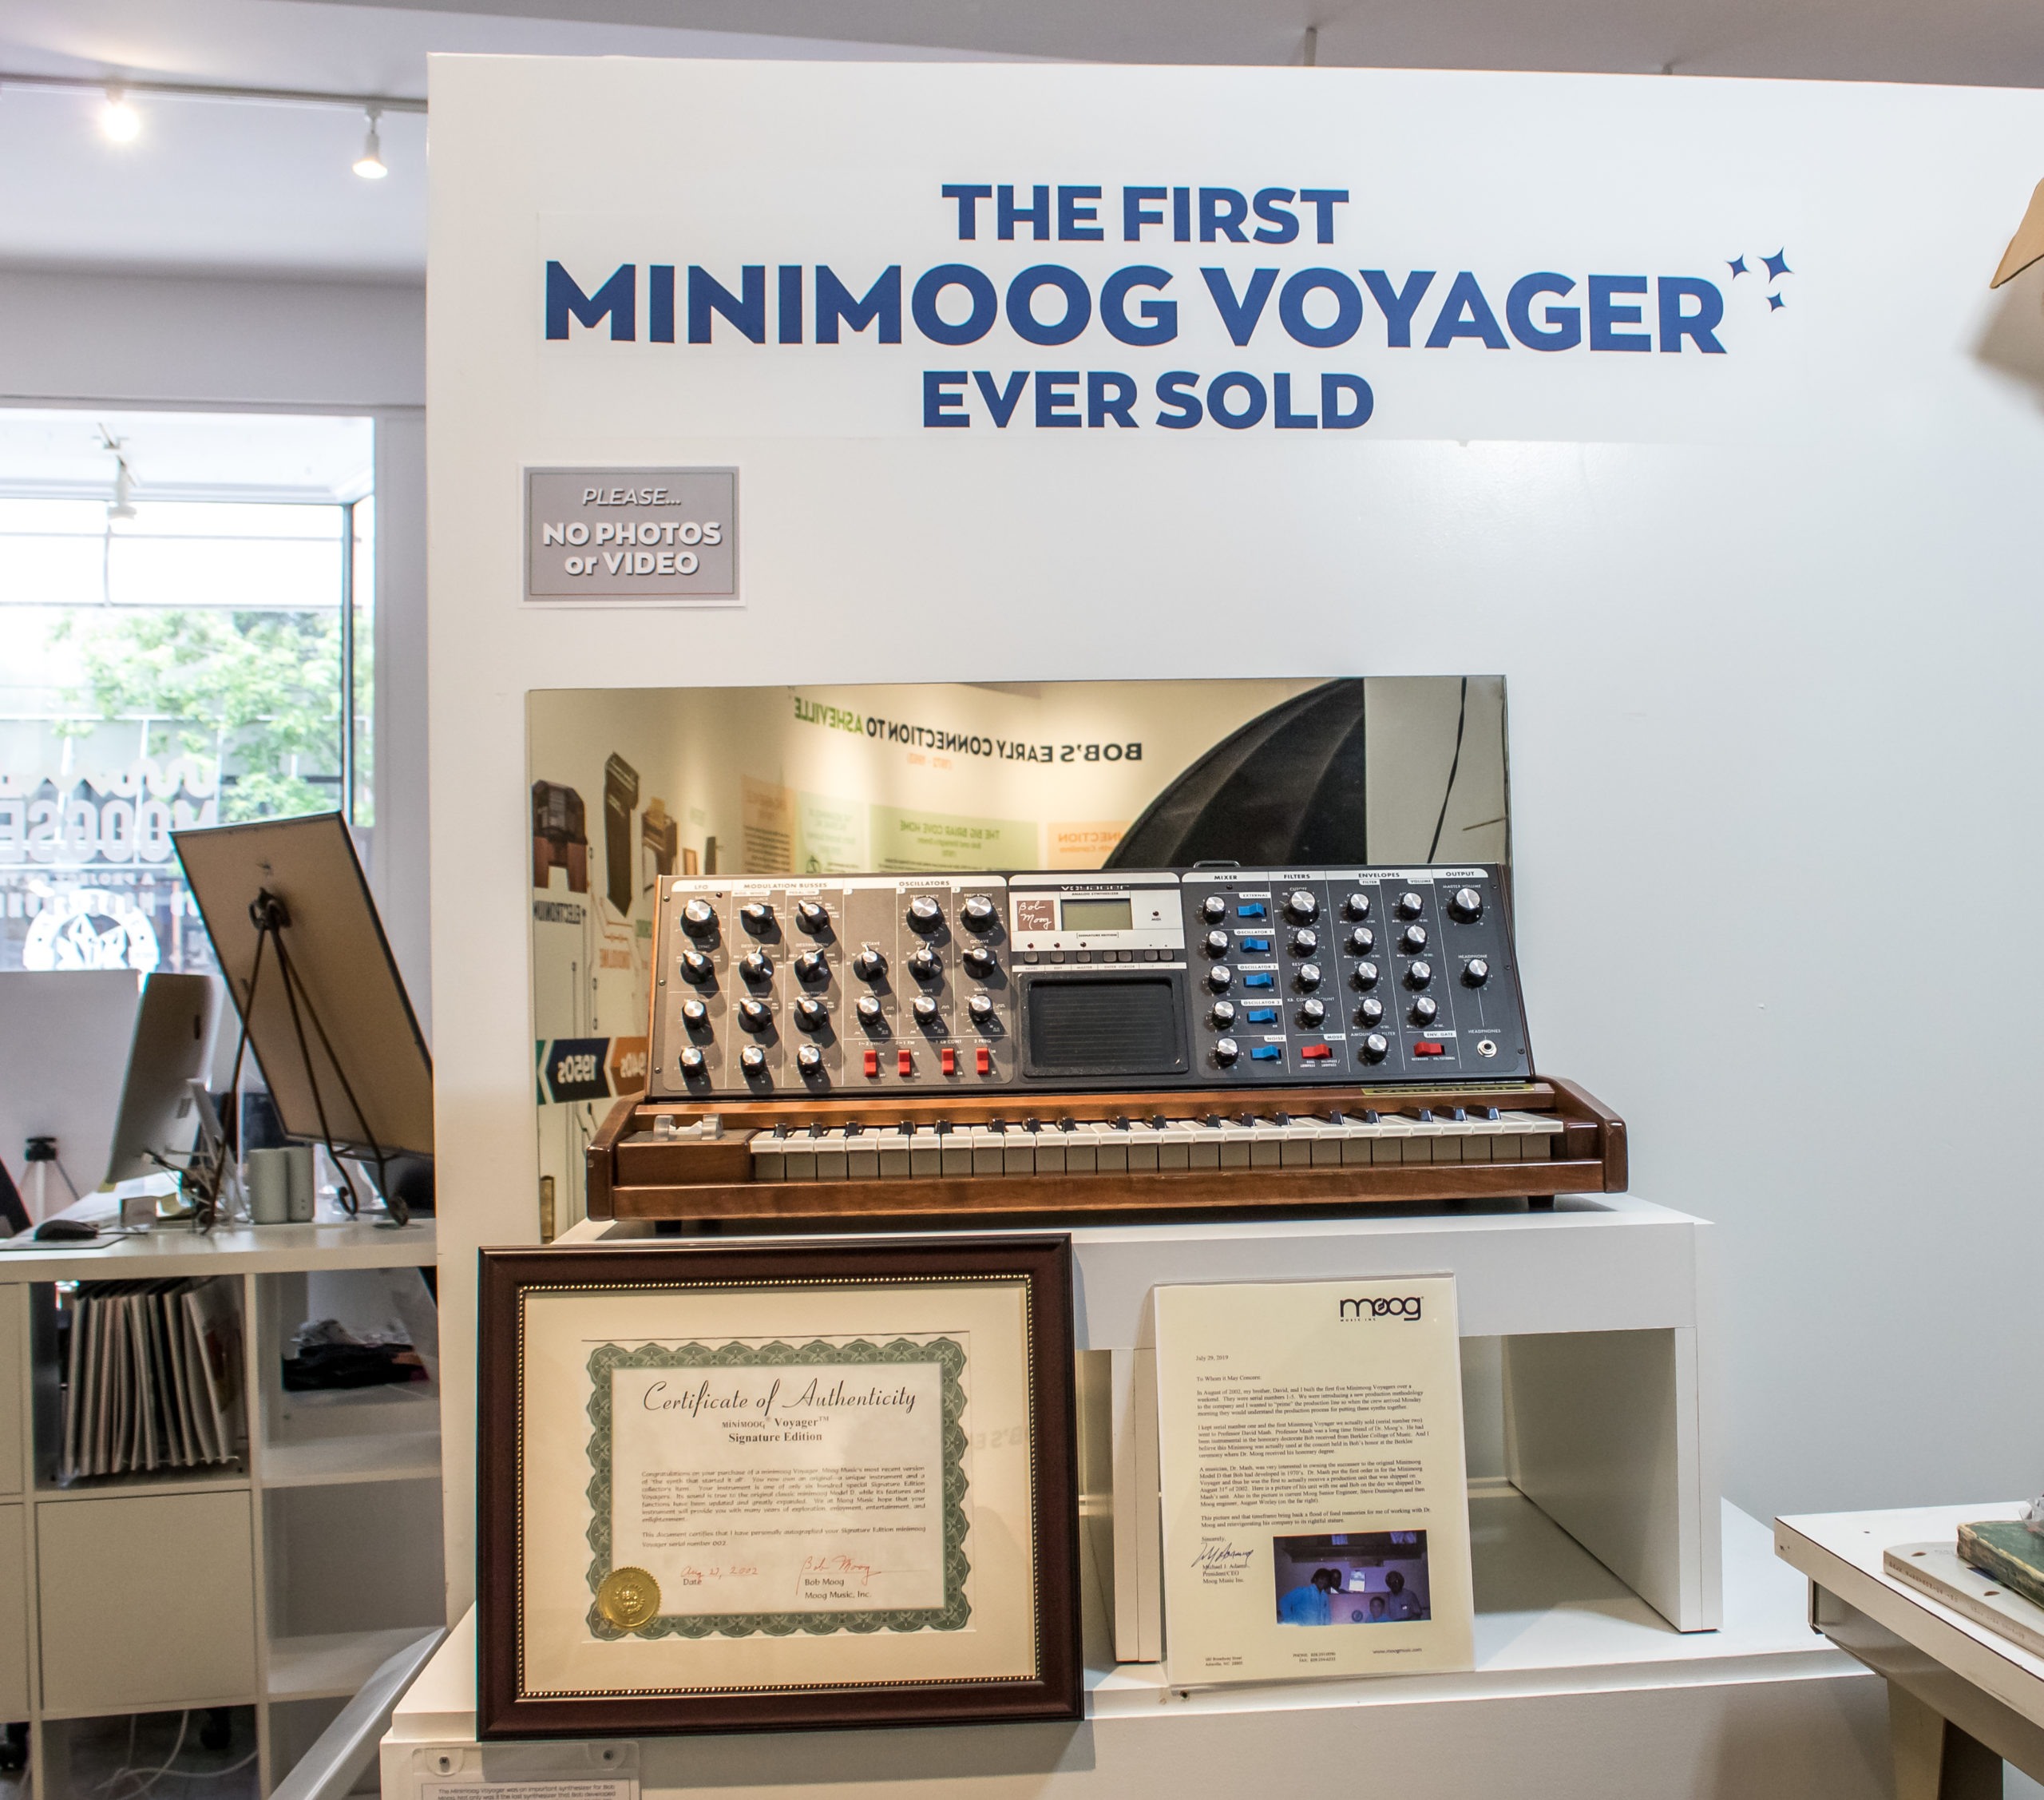 Así nos enseñan a Minimoog Voyager #002 en la exposición "The First Minimoog Voyager Ever Sold" de Moogseum 